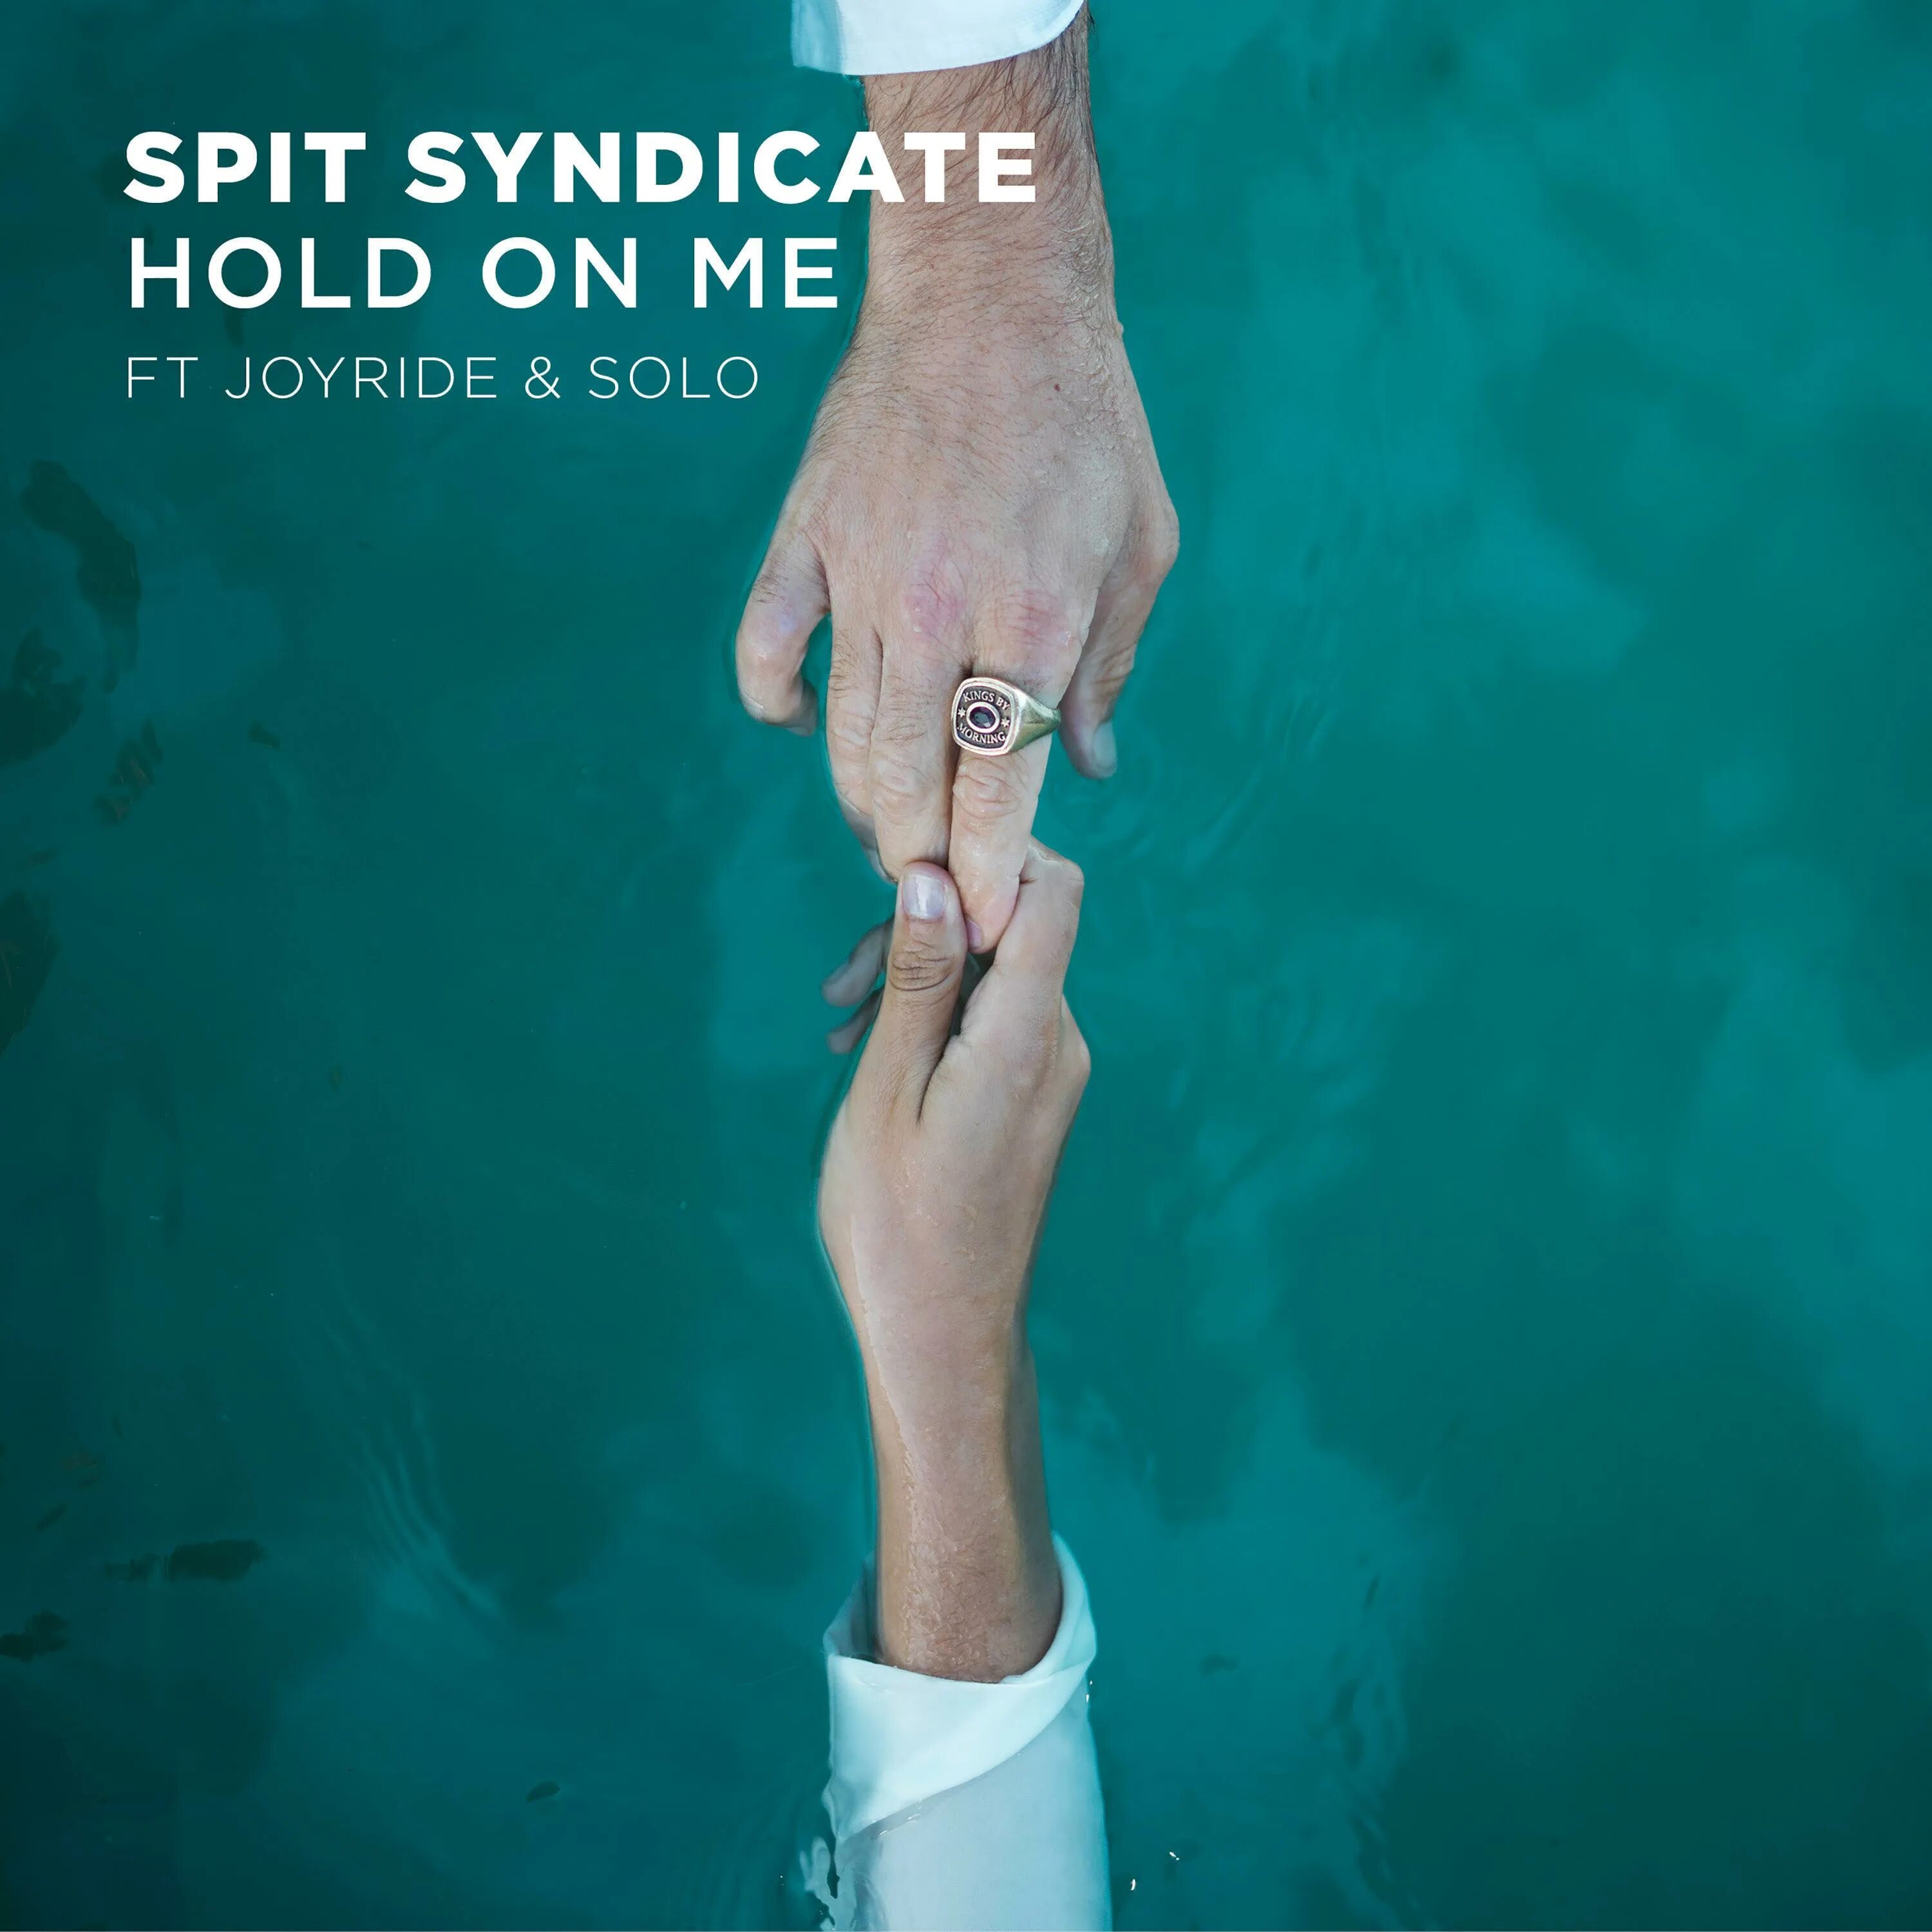 Hold on me. Hold on to me. Hold on to me перевод. Joyride альбом 2017.